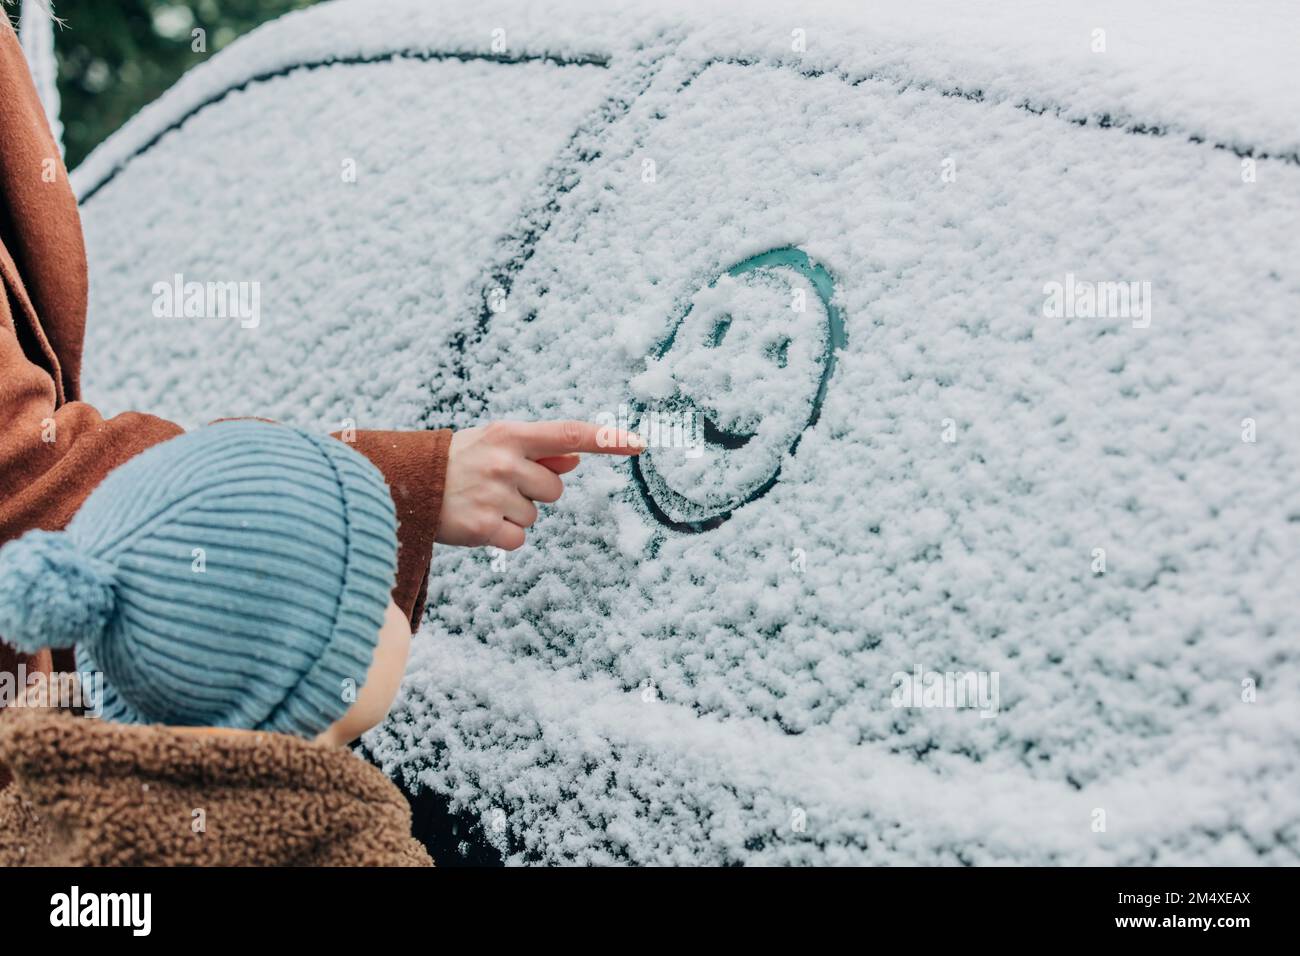 Garçon debout par la mère dessinant le visage humain sur la fenêtre de voiture recouverte de neige Banque D'Images